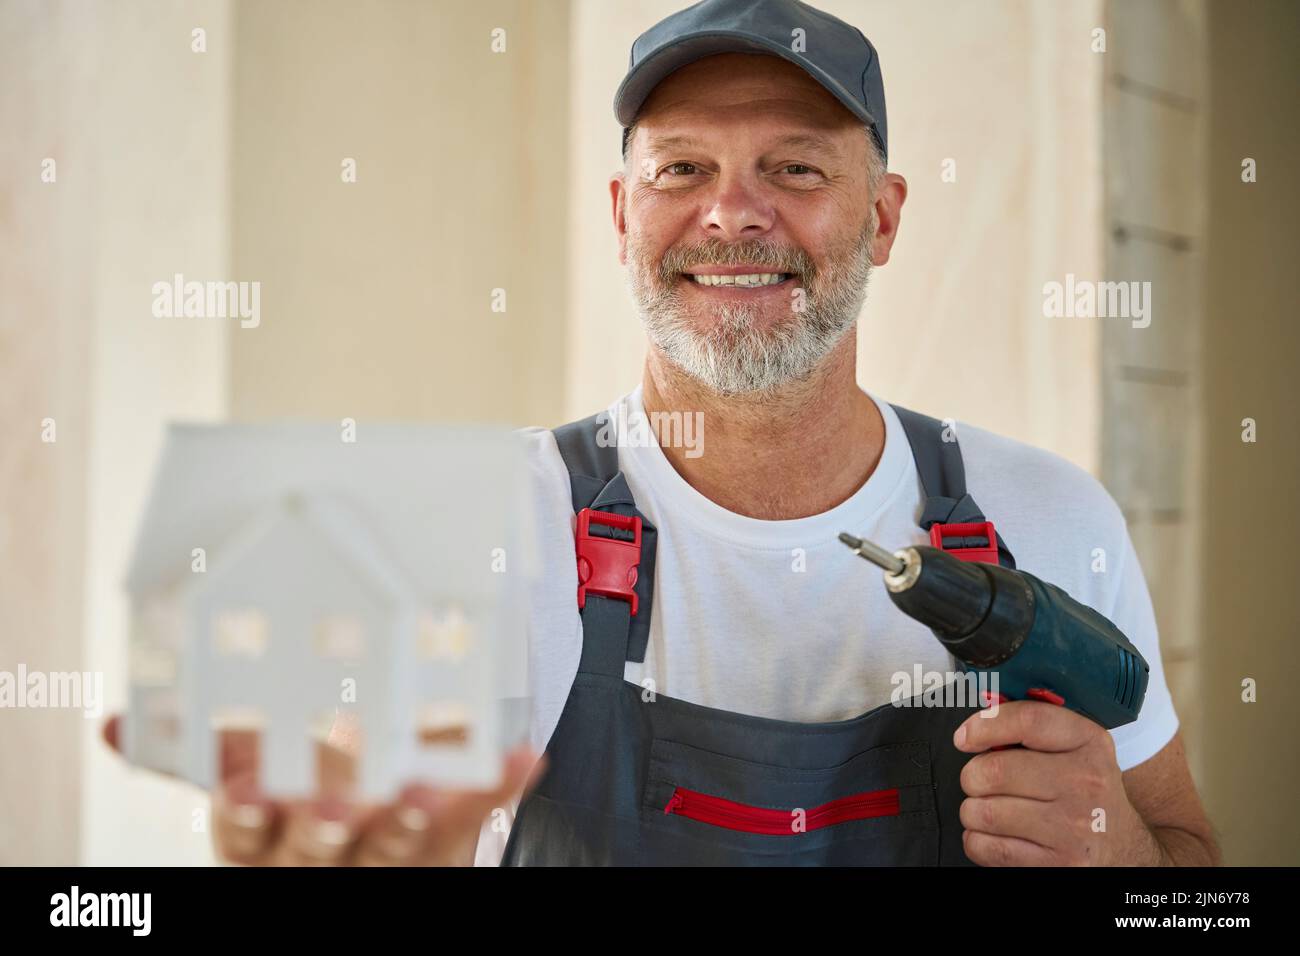 Foto de un constructor adulto sonriente sosteniendo modelo de casa y taladro Foto de stock